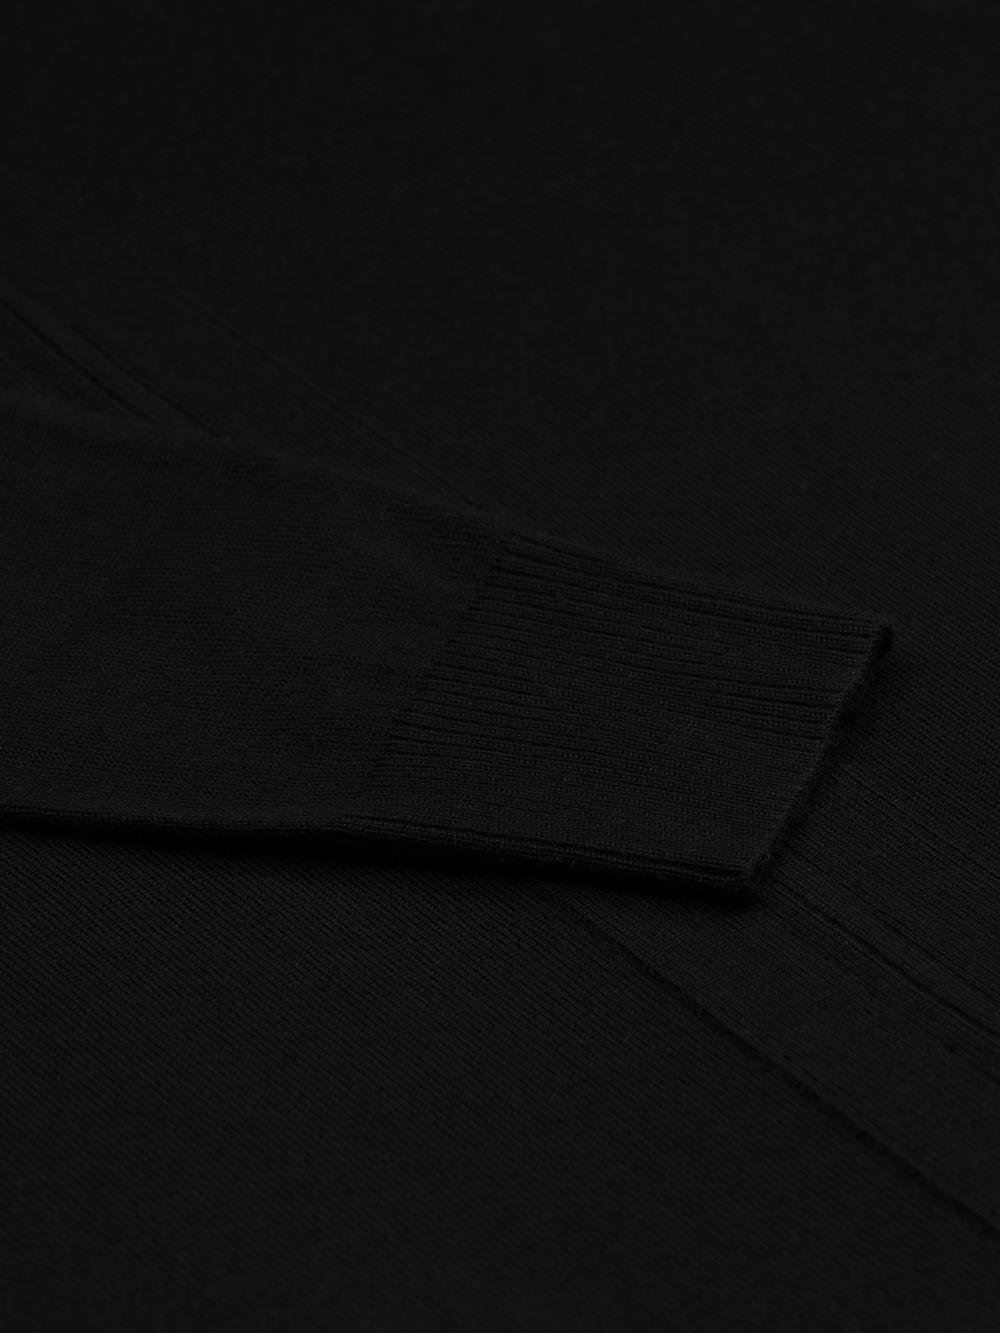 Bady Strickjacke mit Reißverschluss aus schwarz Merinowolle